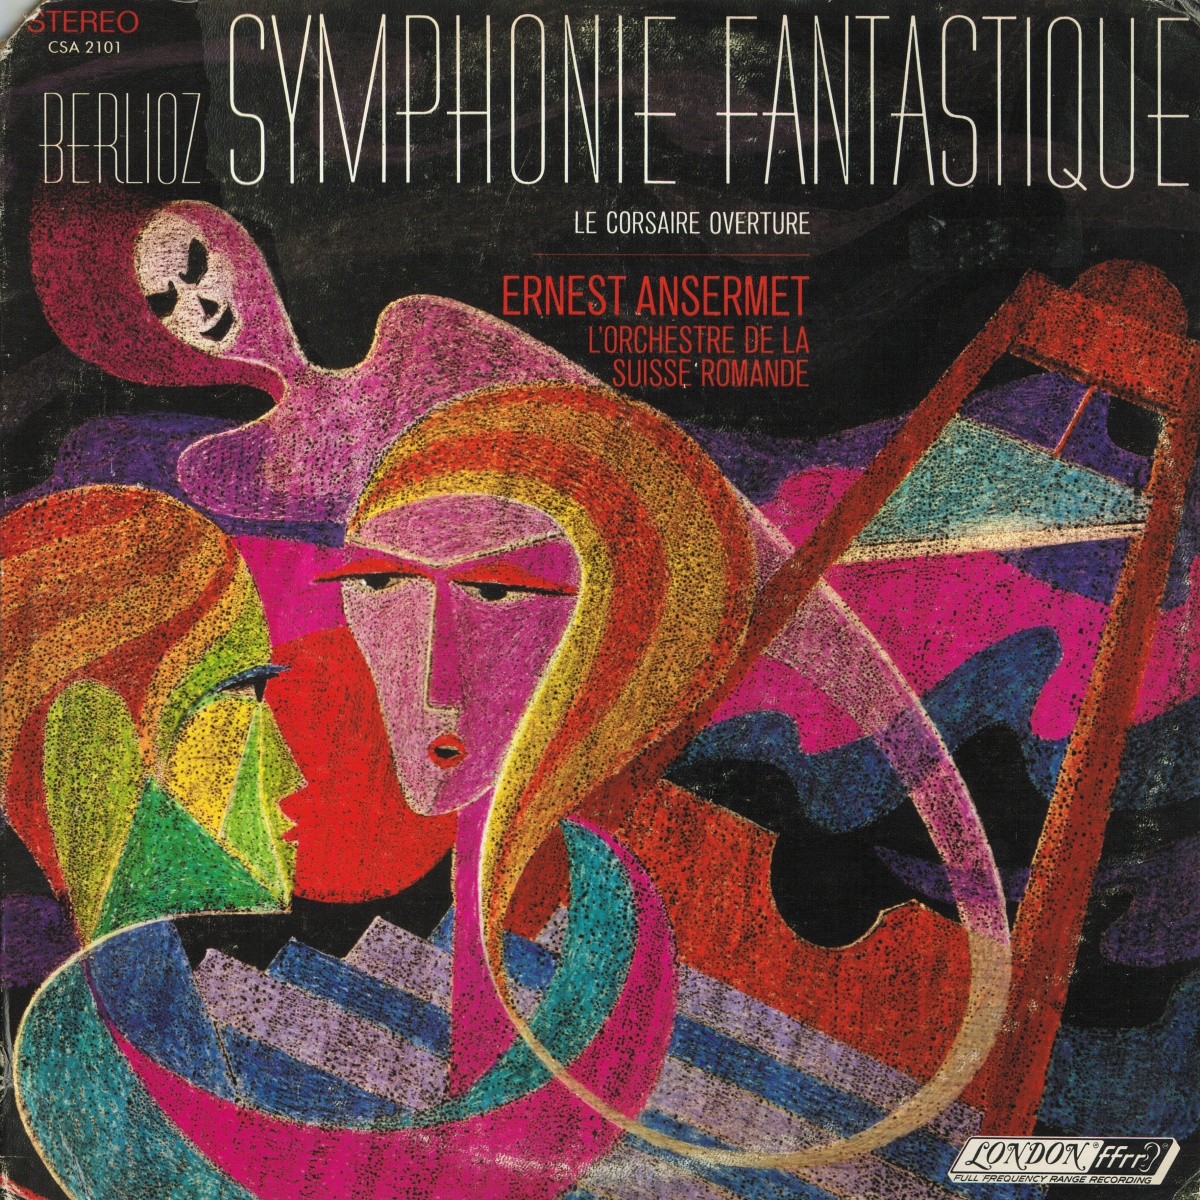 Berlioz, Symphonie Fantastique, OSR, Ernest ANSERMET, Decca 1968, Cliquer sur la photo pour une vue agrandie et les références